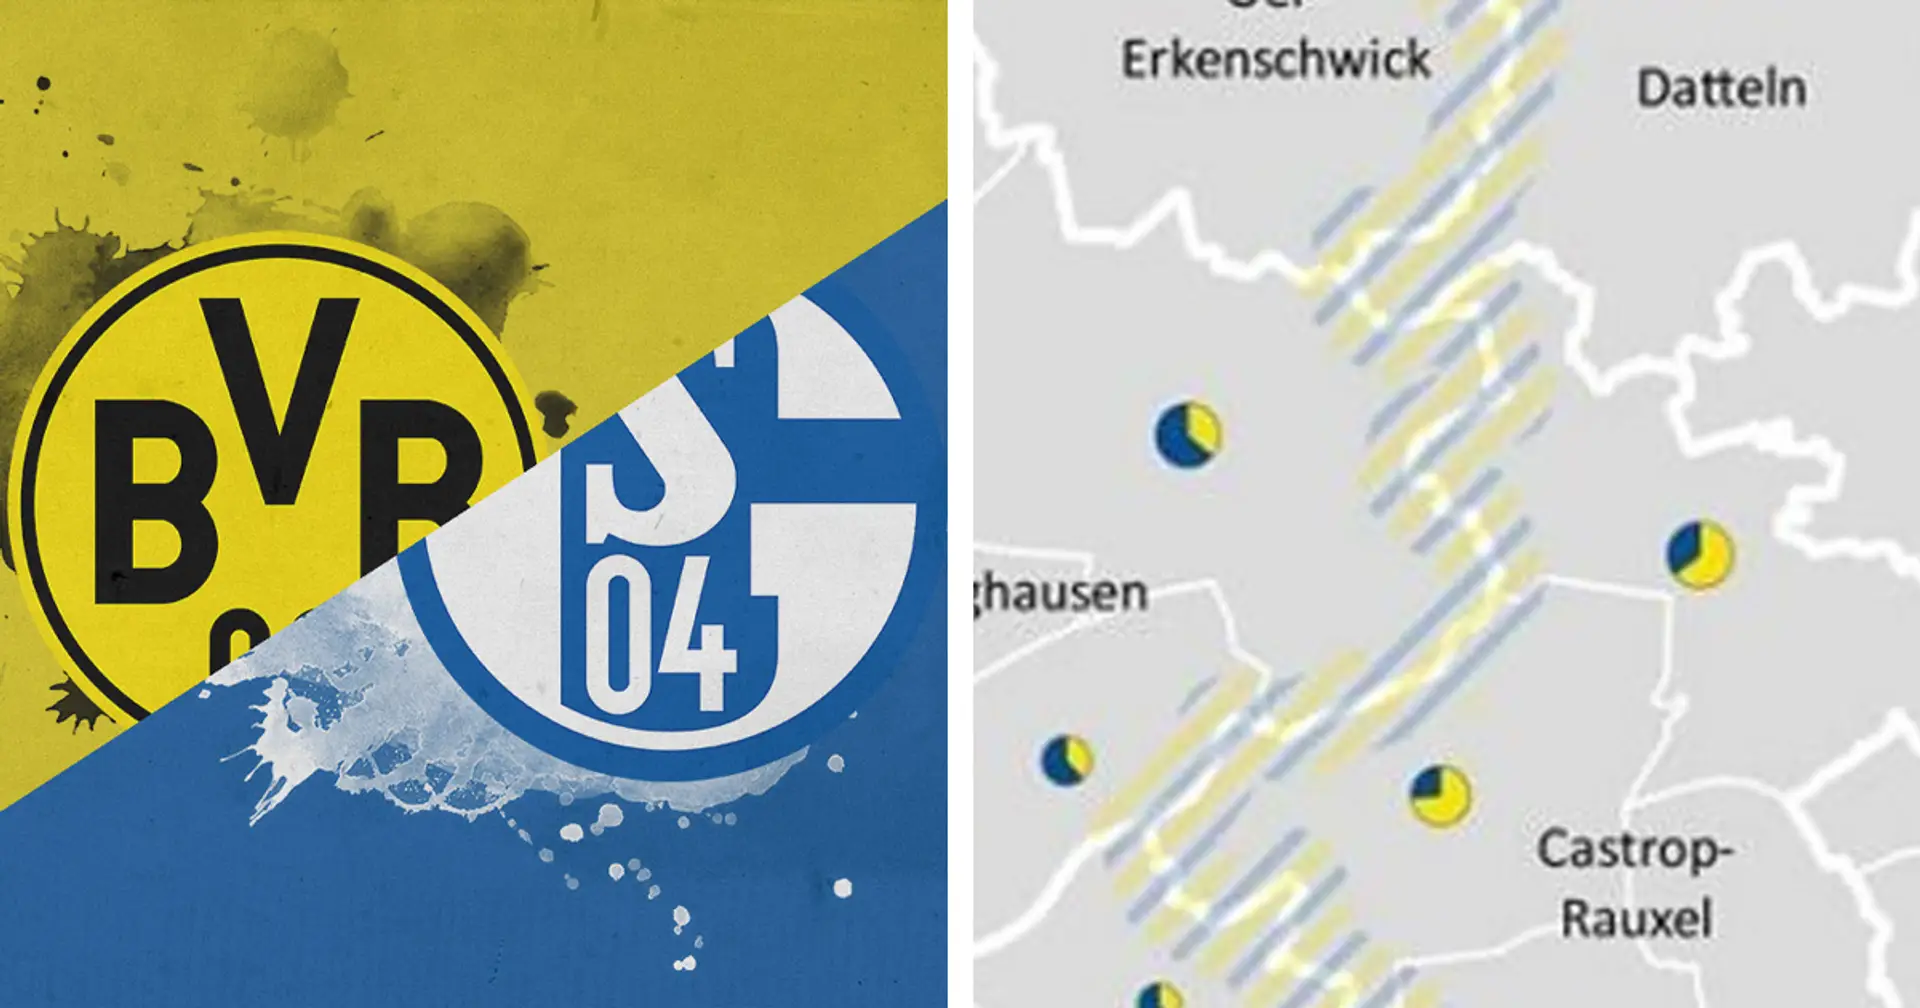 Fußball-Äquator im Ruhrgebiet: Bemerkenswerte Karte der Unterstützung des BVB und FC Schalke 04